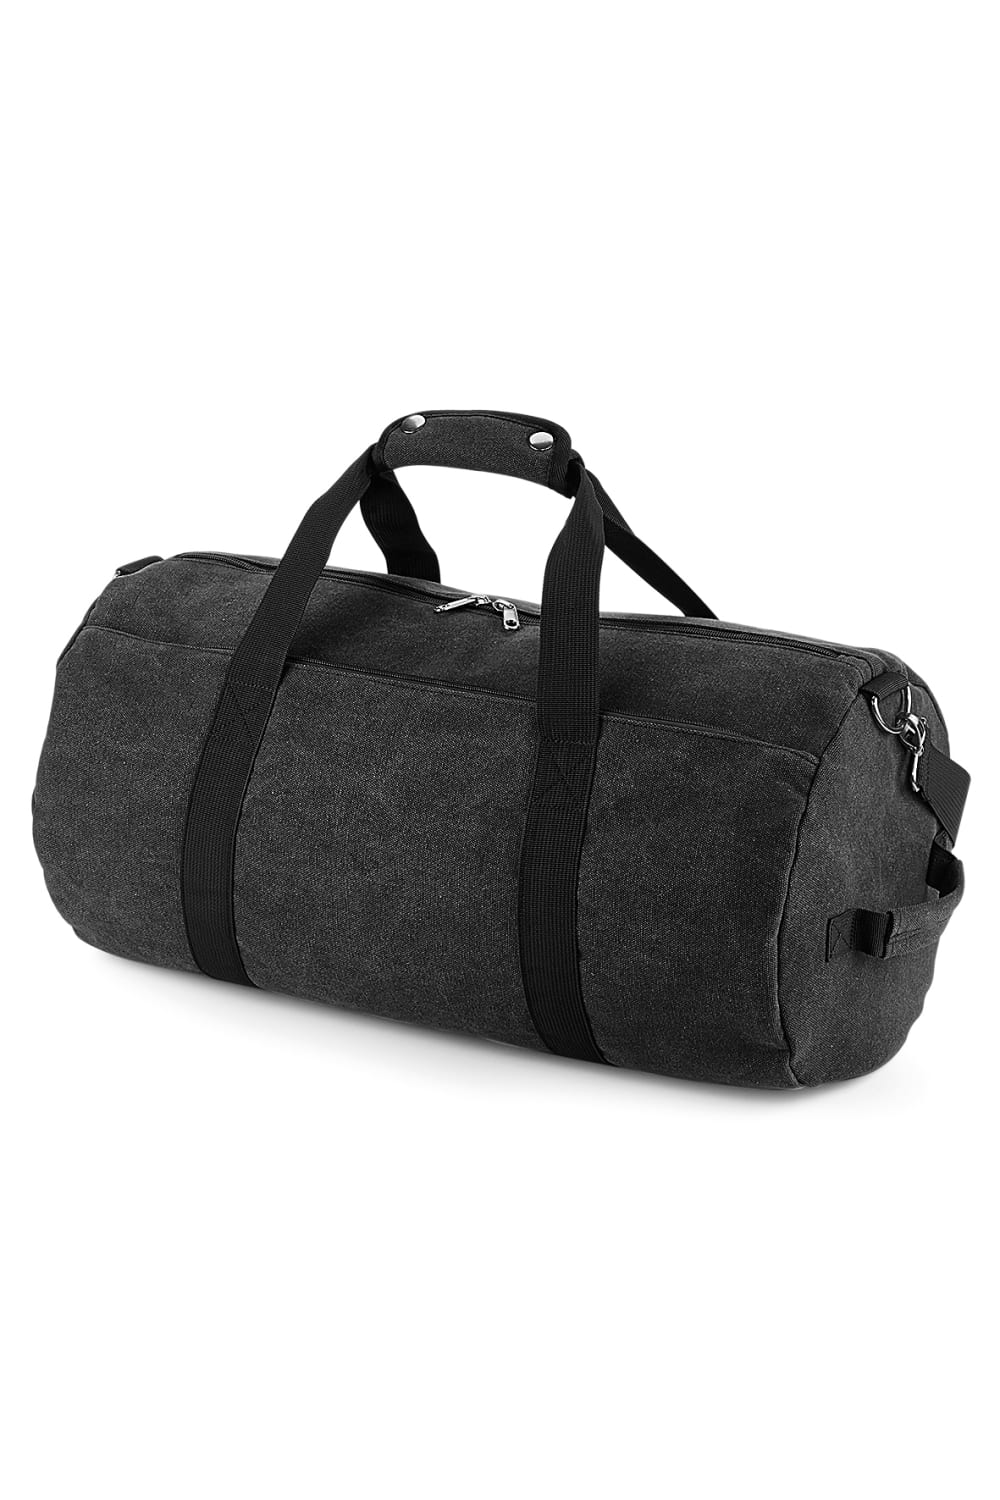 Bagbase Vintage Canvas Barrel Bag (Vintage Black) (One Size)